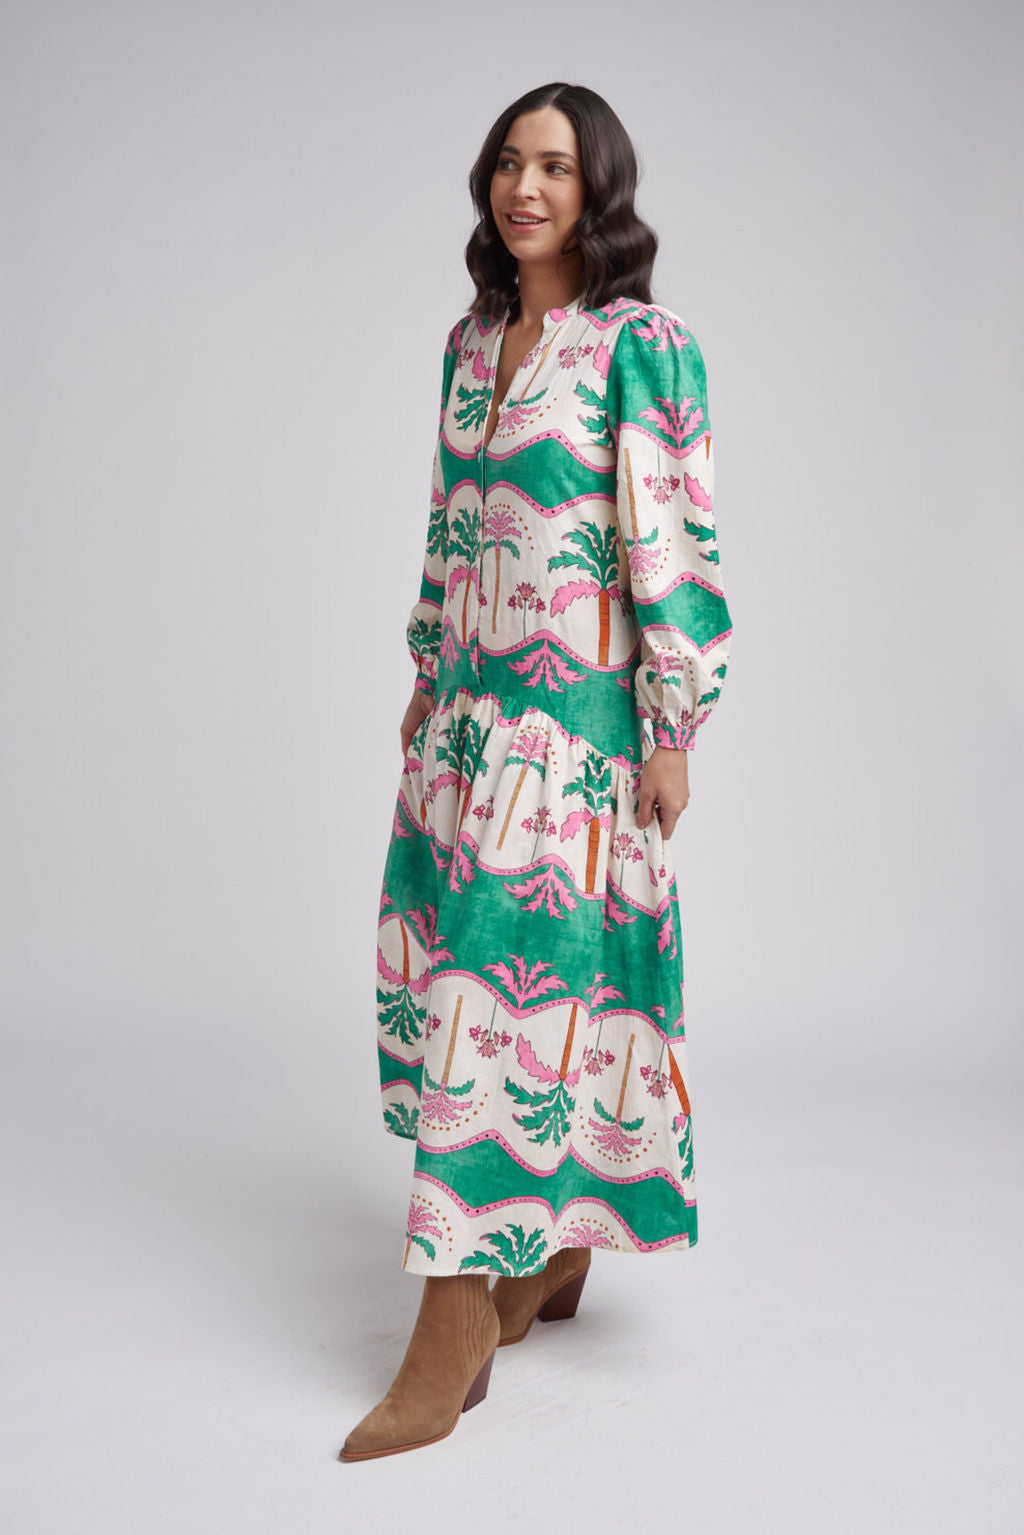 Cloth+Paper+Scissors Drop Waist Maxi Dress - Palm Tree Print